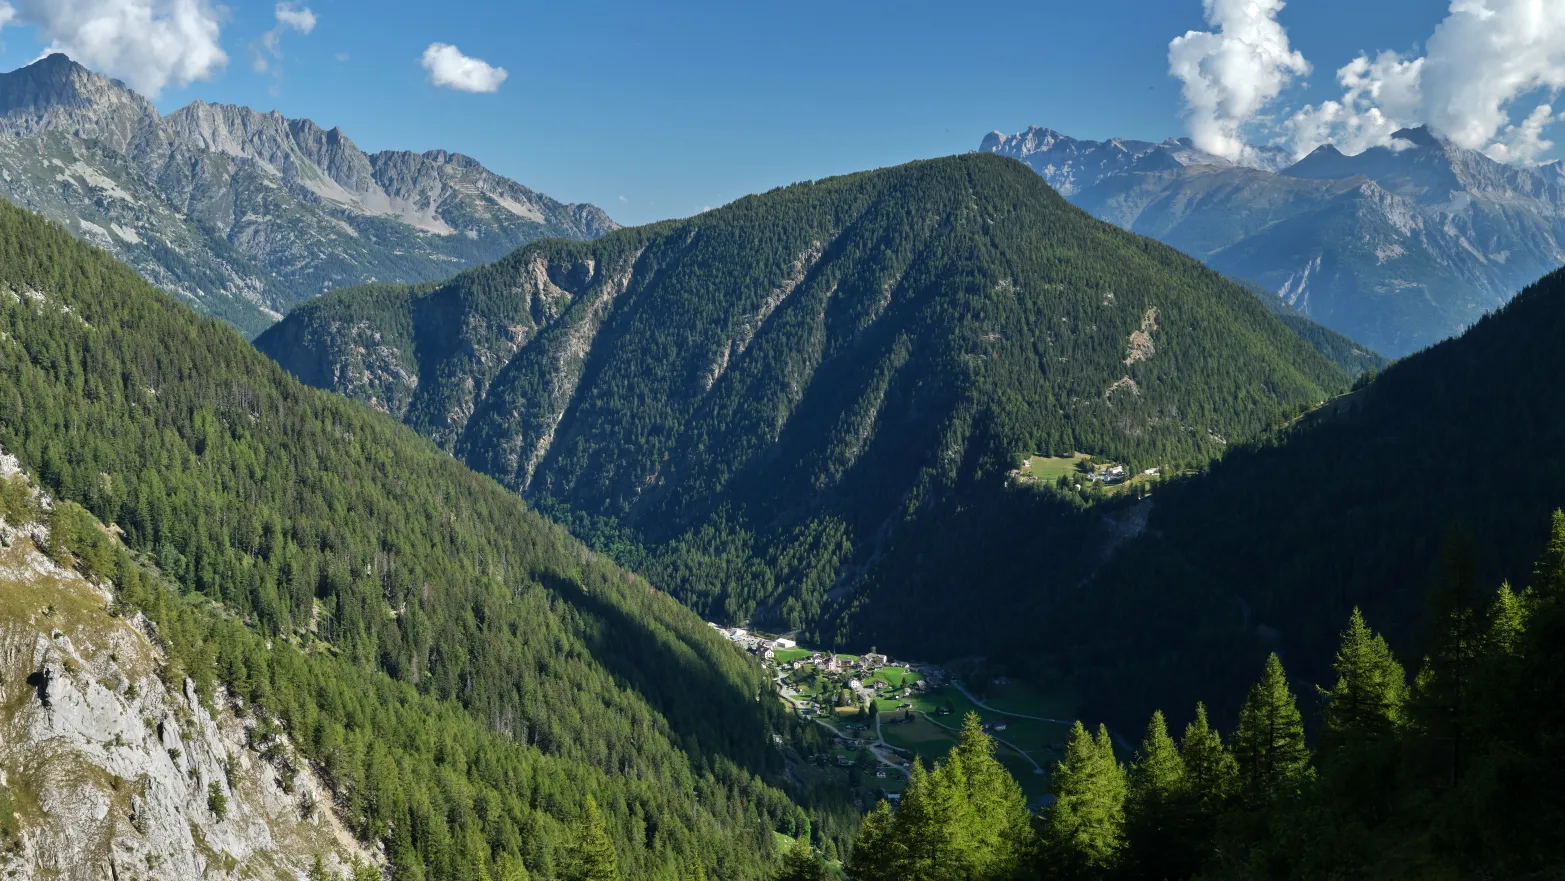 zalesněné horské hřebeny s pár domky v údolí mezi nimi